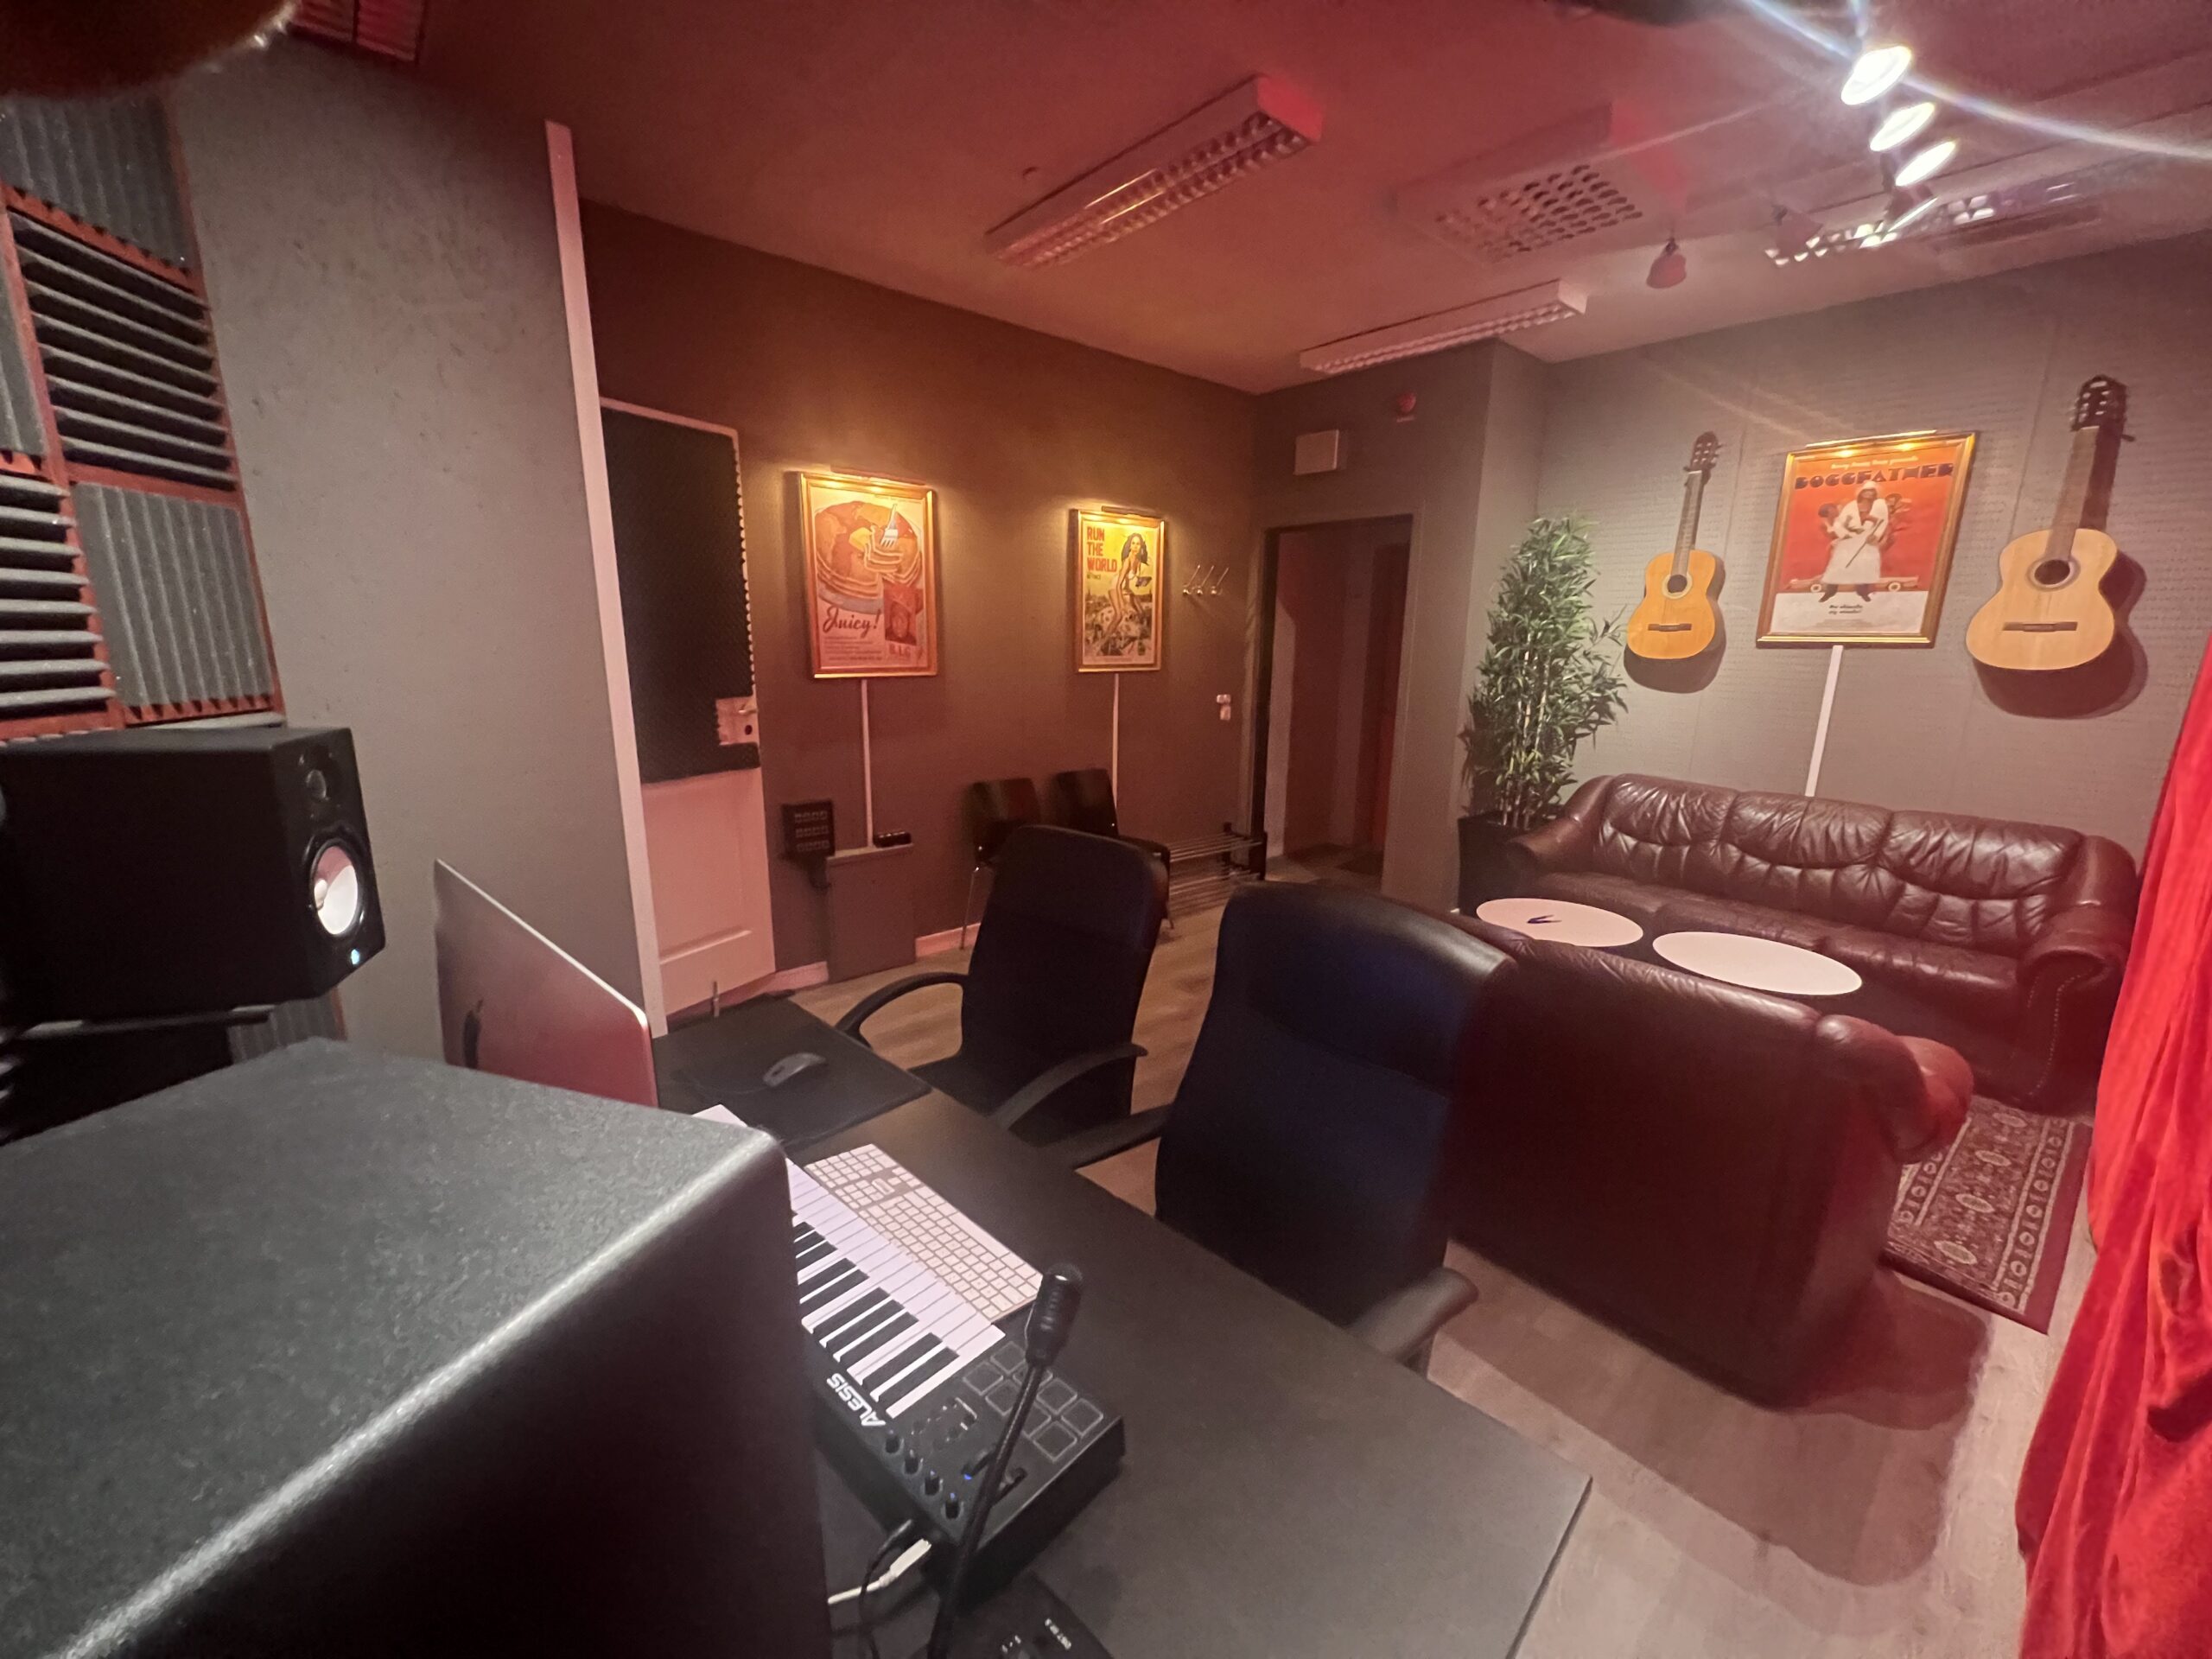 Musik studios